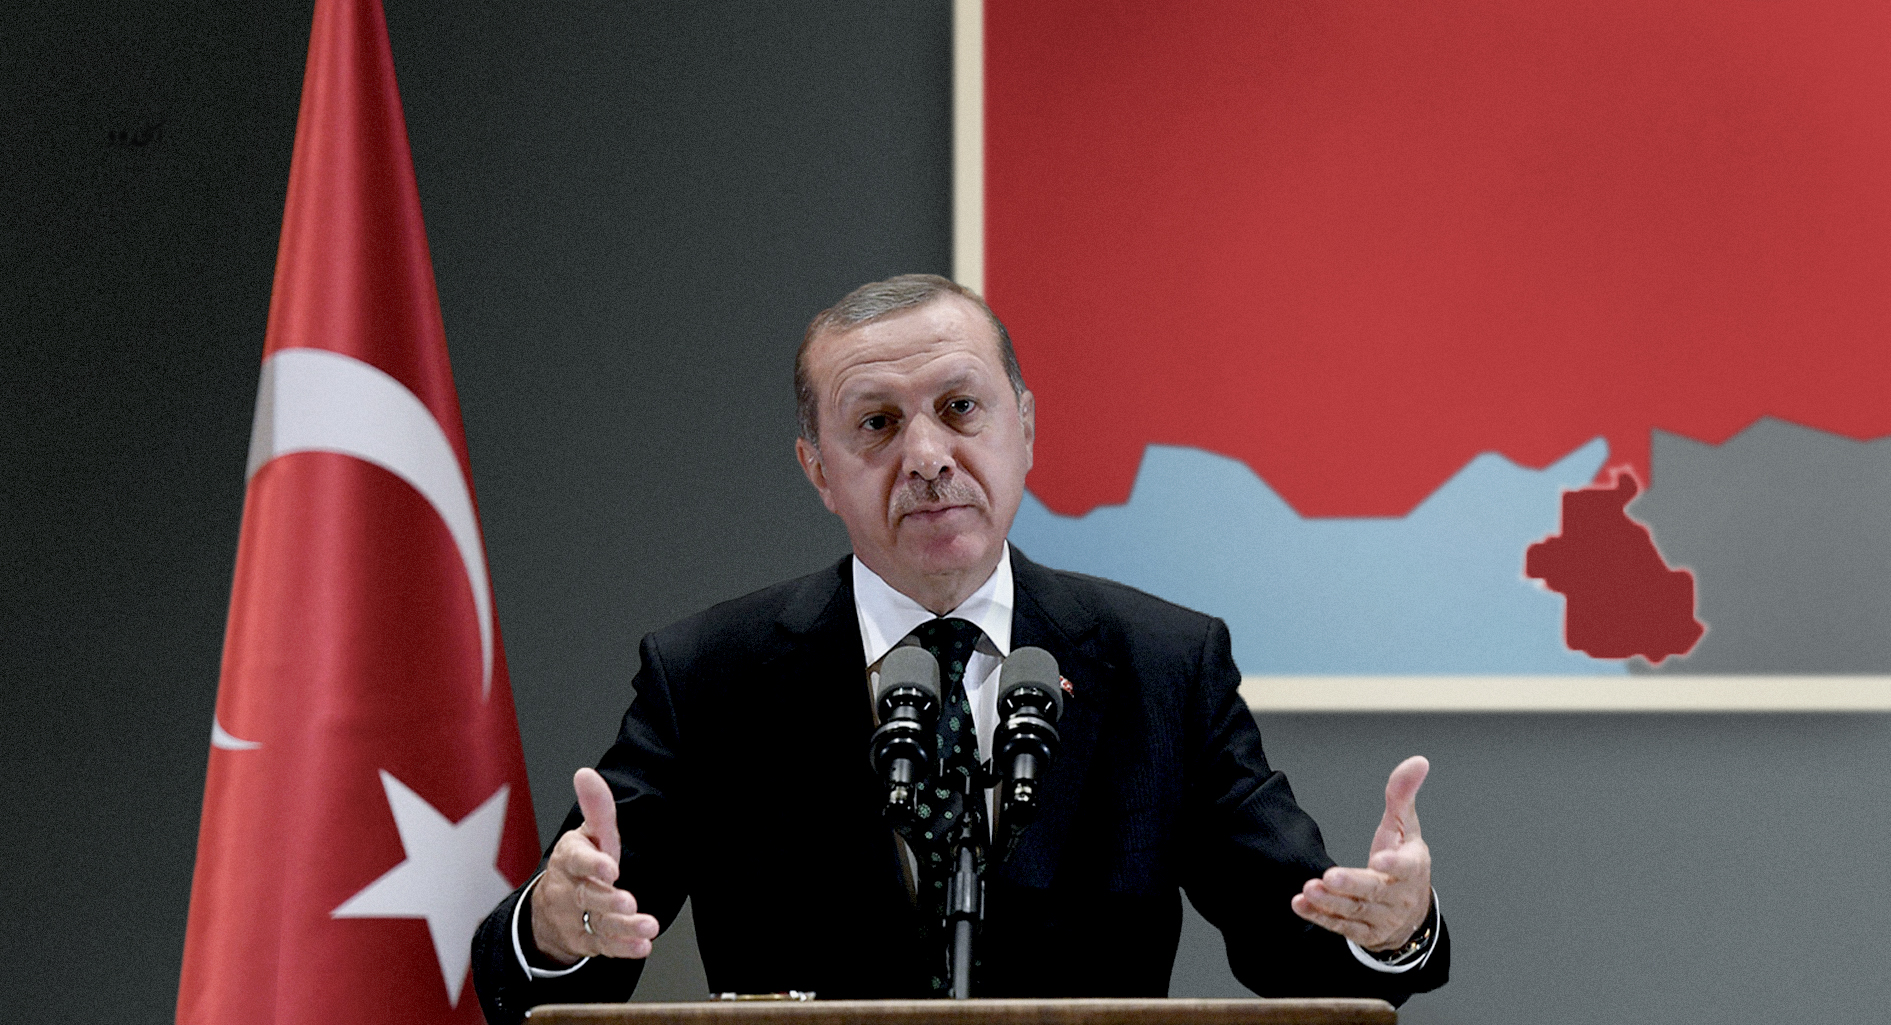 صورة إردوغان يعرضُ ضمَّ إدلب لتركيا لحلِّ الأزمة سلمياً